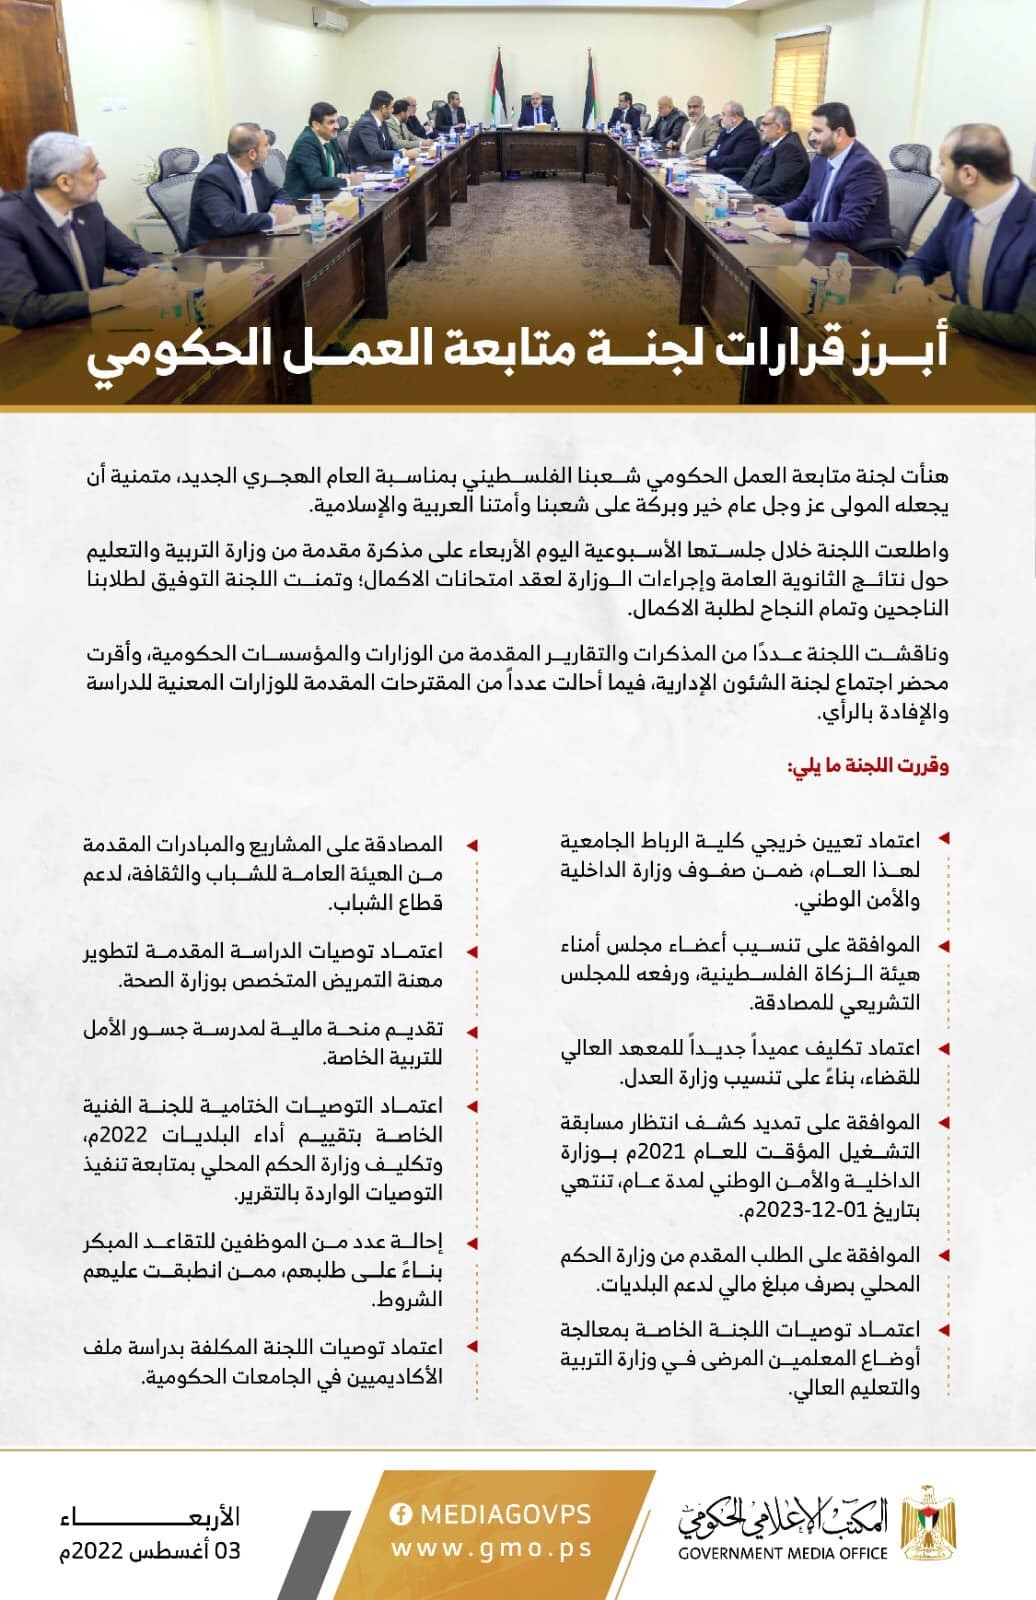 طالع: لجنة متابعة العمل الحكومي بغزة تتخذ عدة قرارات خلال جلستها الأسبوعية